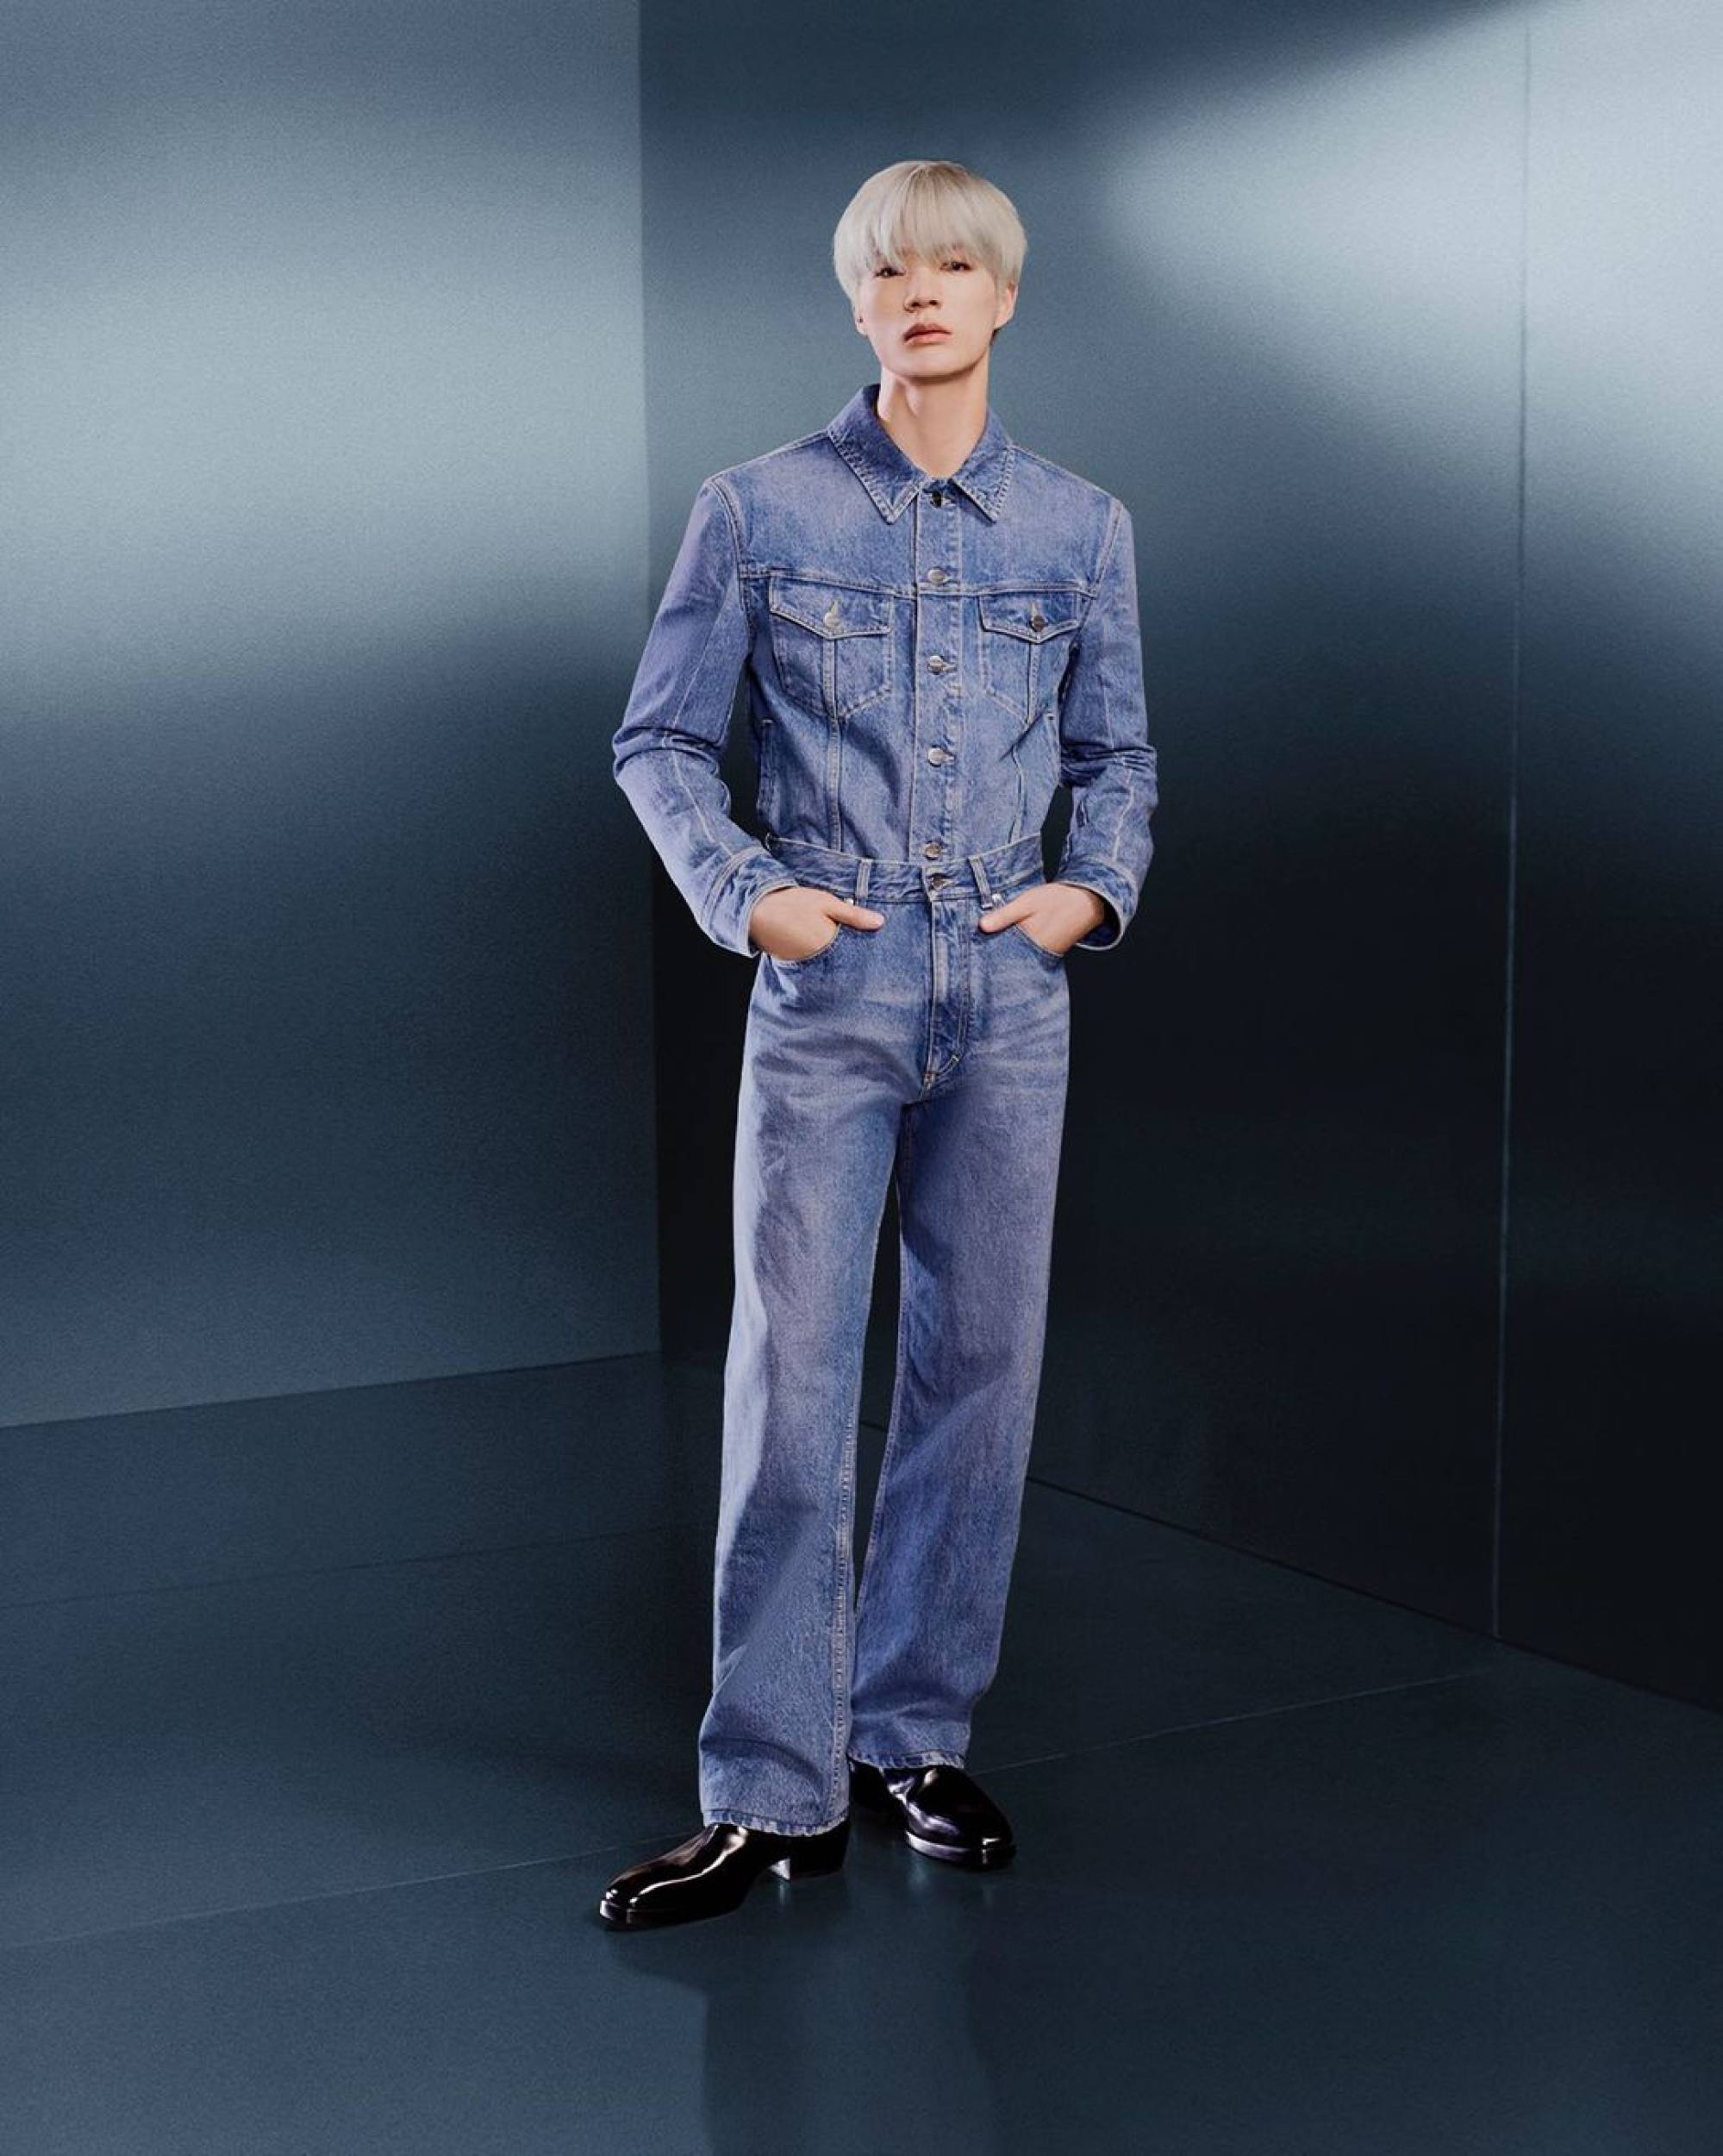 Song Joong-ki Is Louis Vuitton's Newest Brand Ambassador